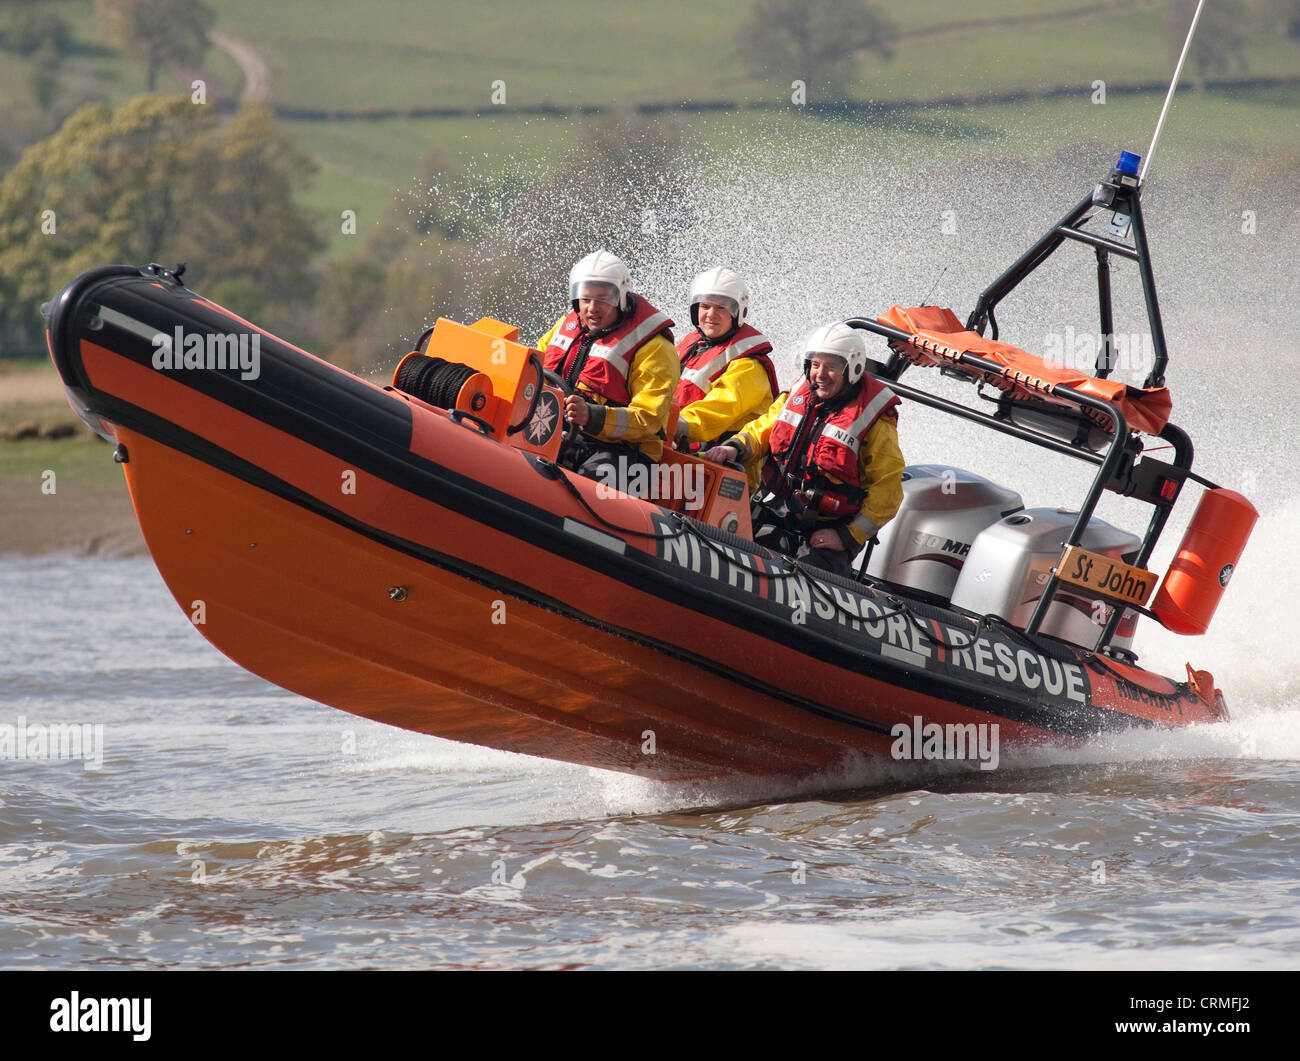 Geschwindigkeit, Kraft Festrumpfschlauchboot Nith Inshore Rescue unabhängige Rettungsboot-üben nur Glencaple UK Stockfoto